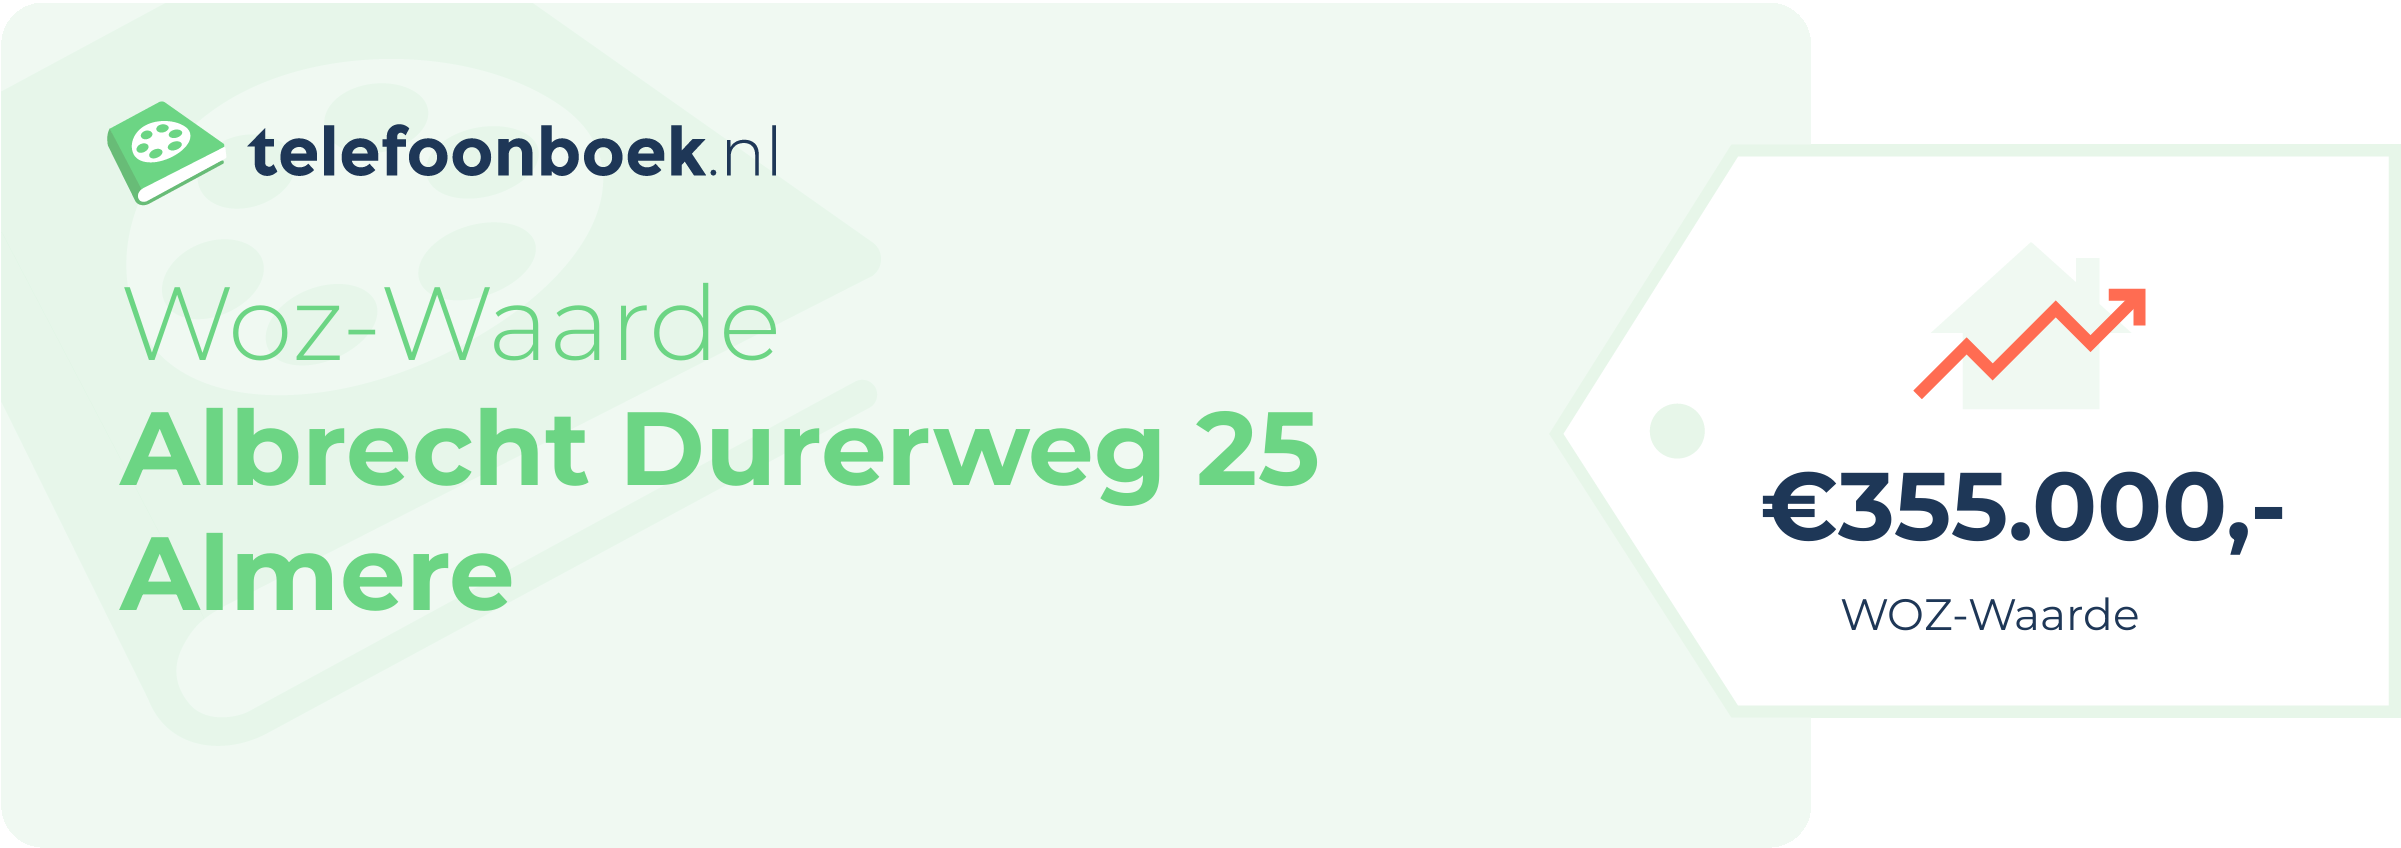 WOZ-waarde Albrecht Durerweg 25 Almere